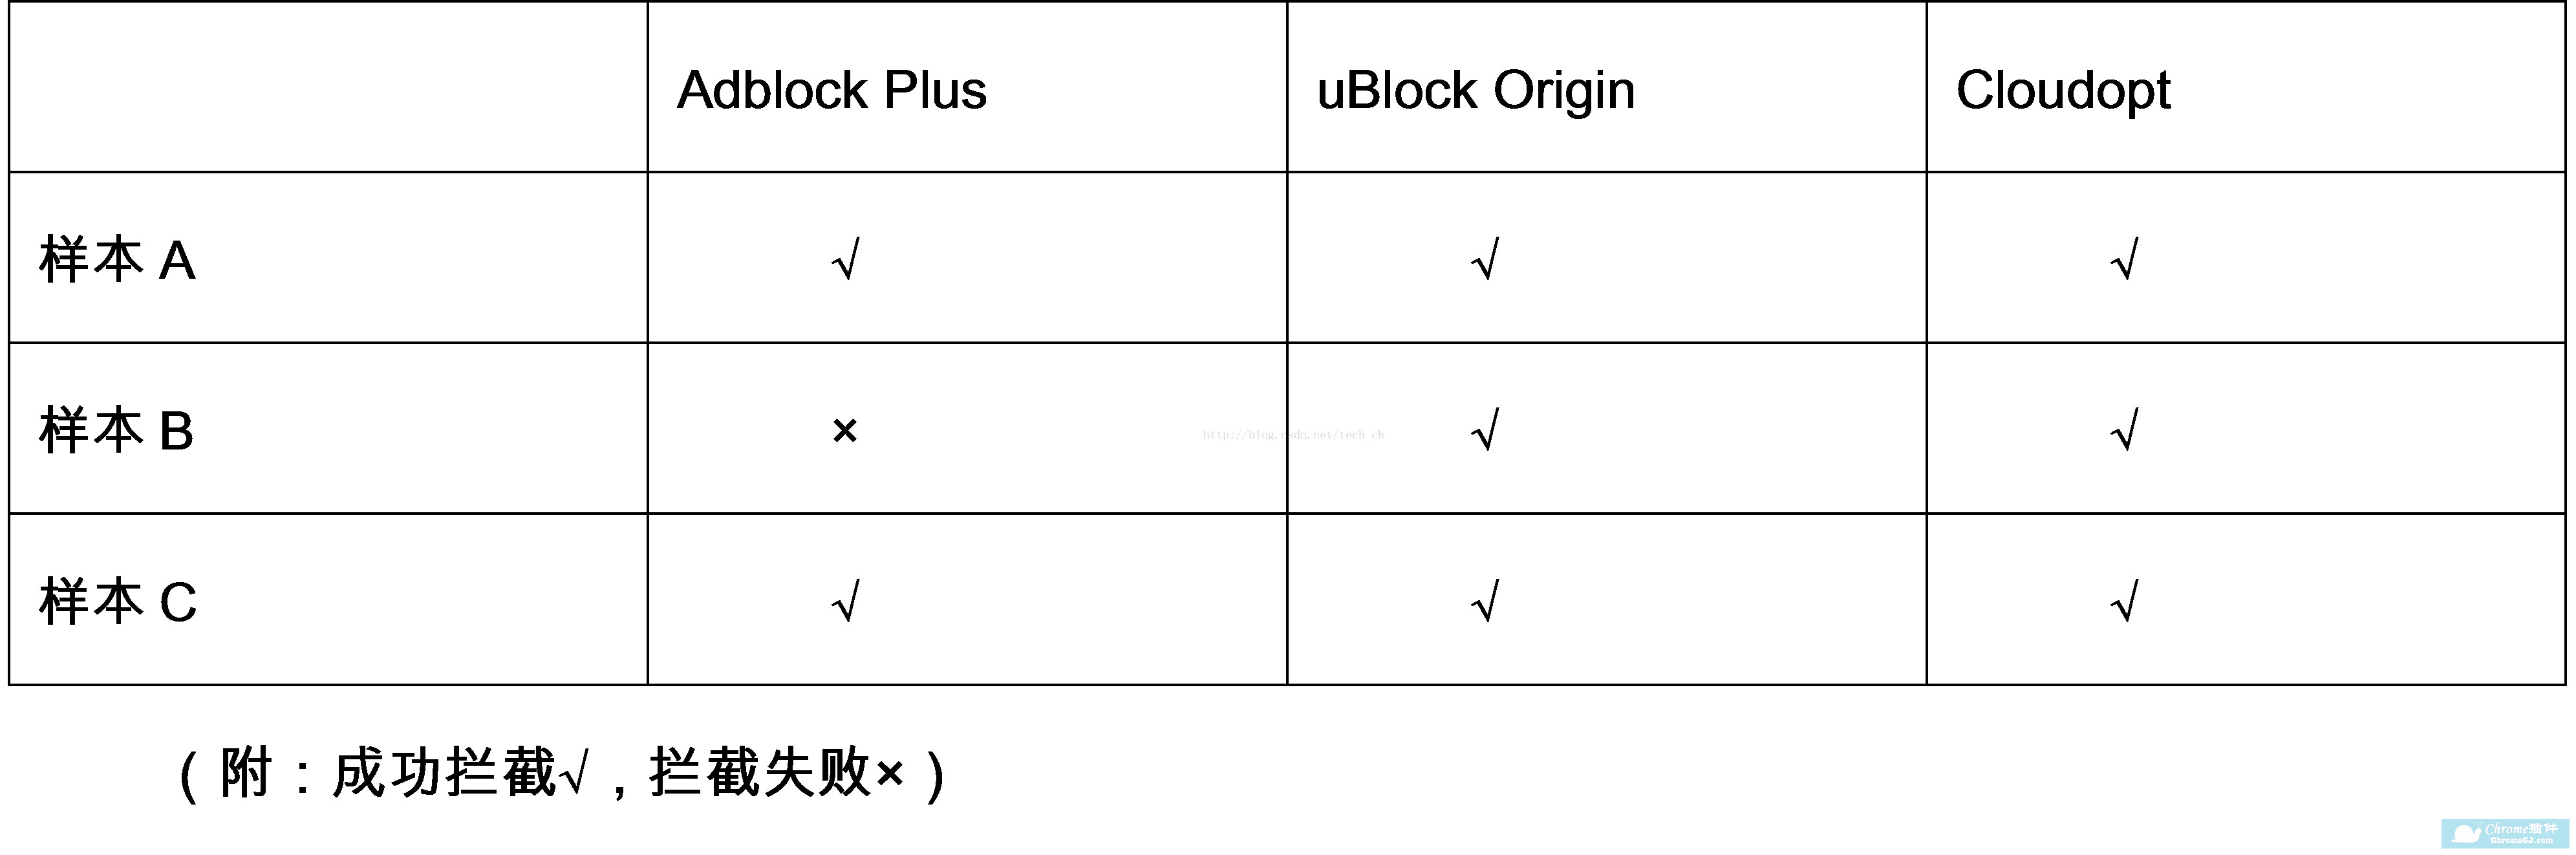 Adblock Plus、uBlock Origin、Cloudopt随机样本对比